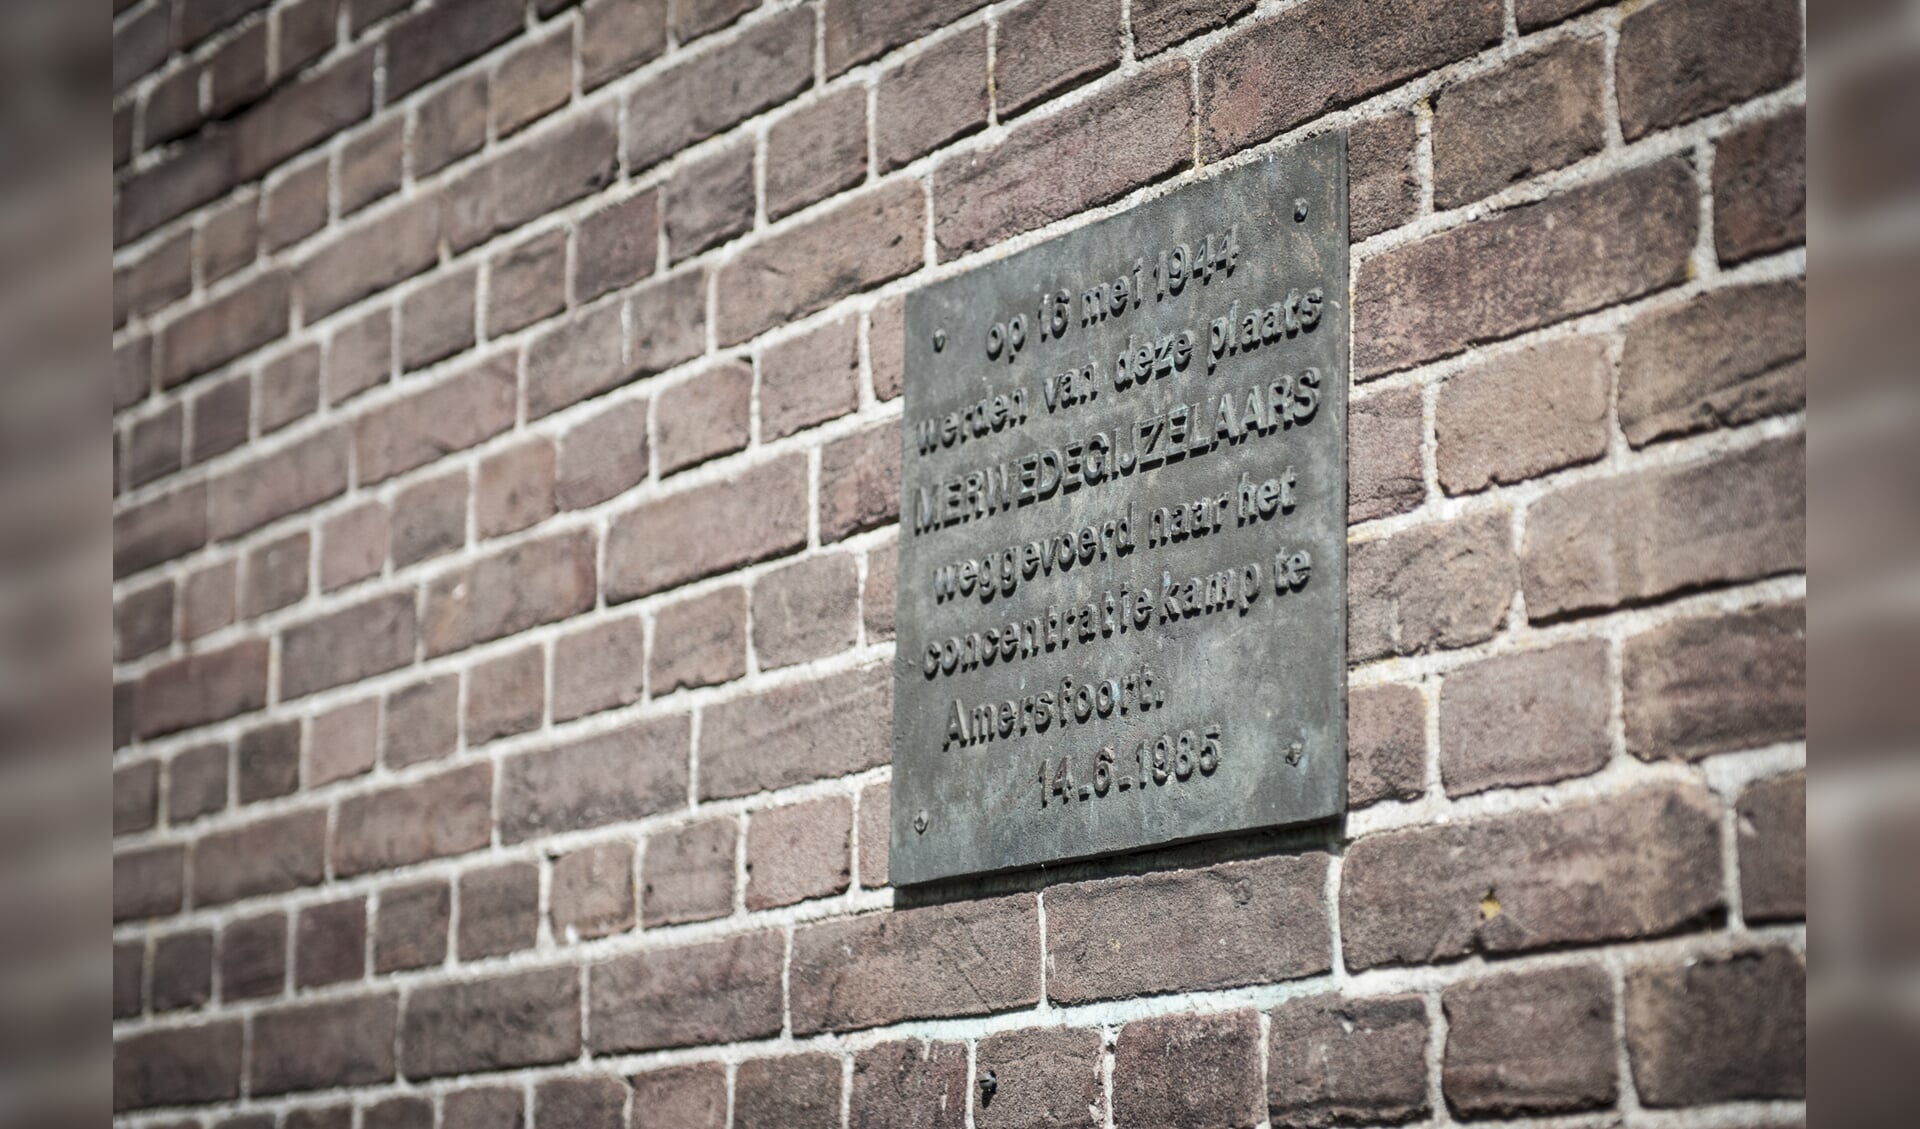 De plaquette ter herdenking van de merwedegijzelaars.